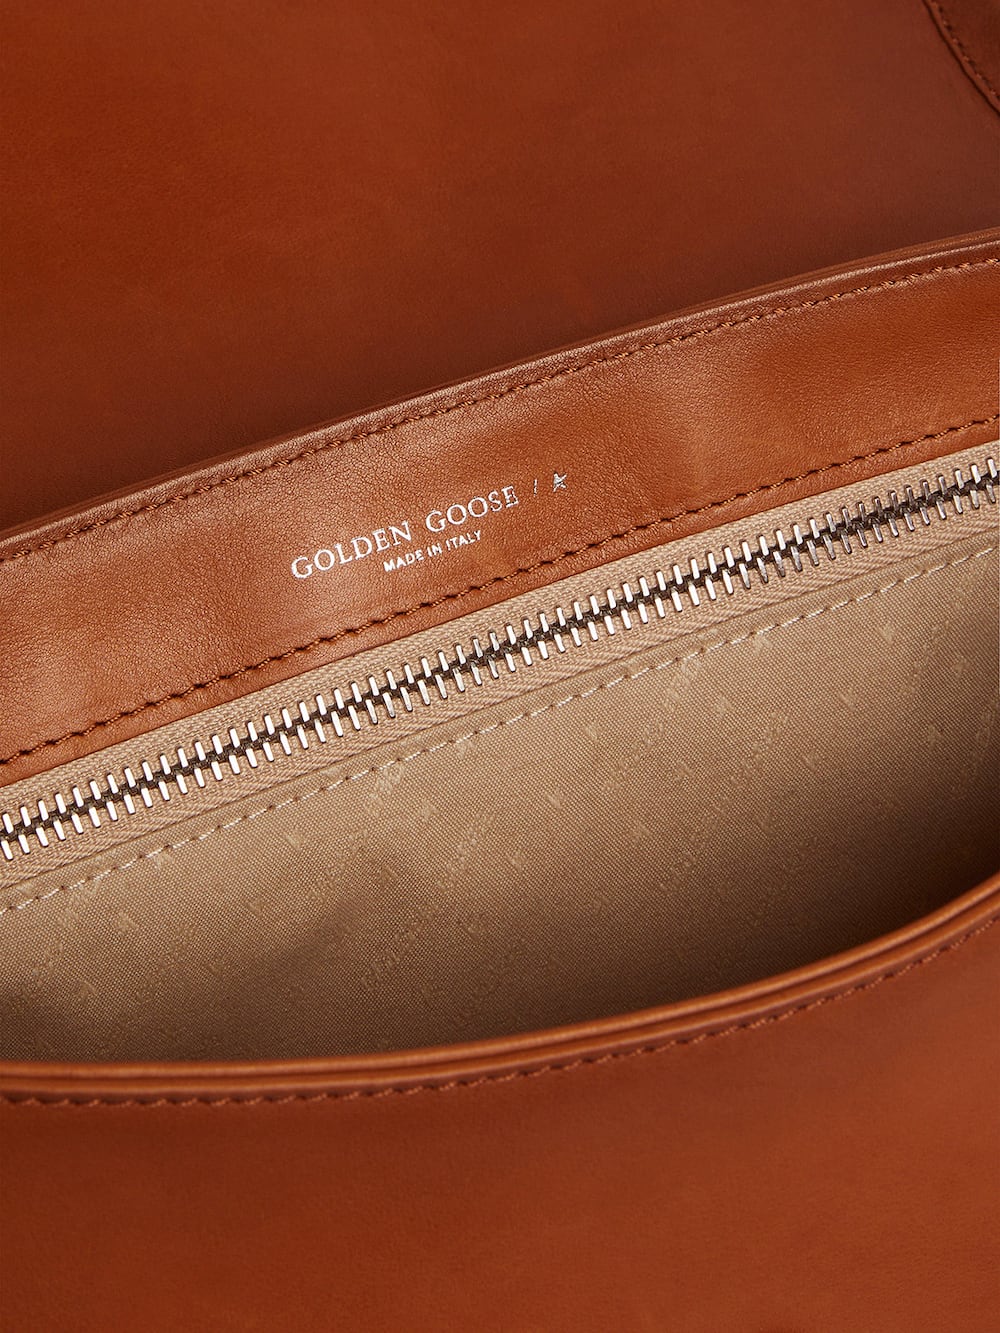 Golden Goose - Tasche Rodeo Bag Medium aus naturfarbenem Leder mit hellblauen Details in 